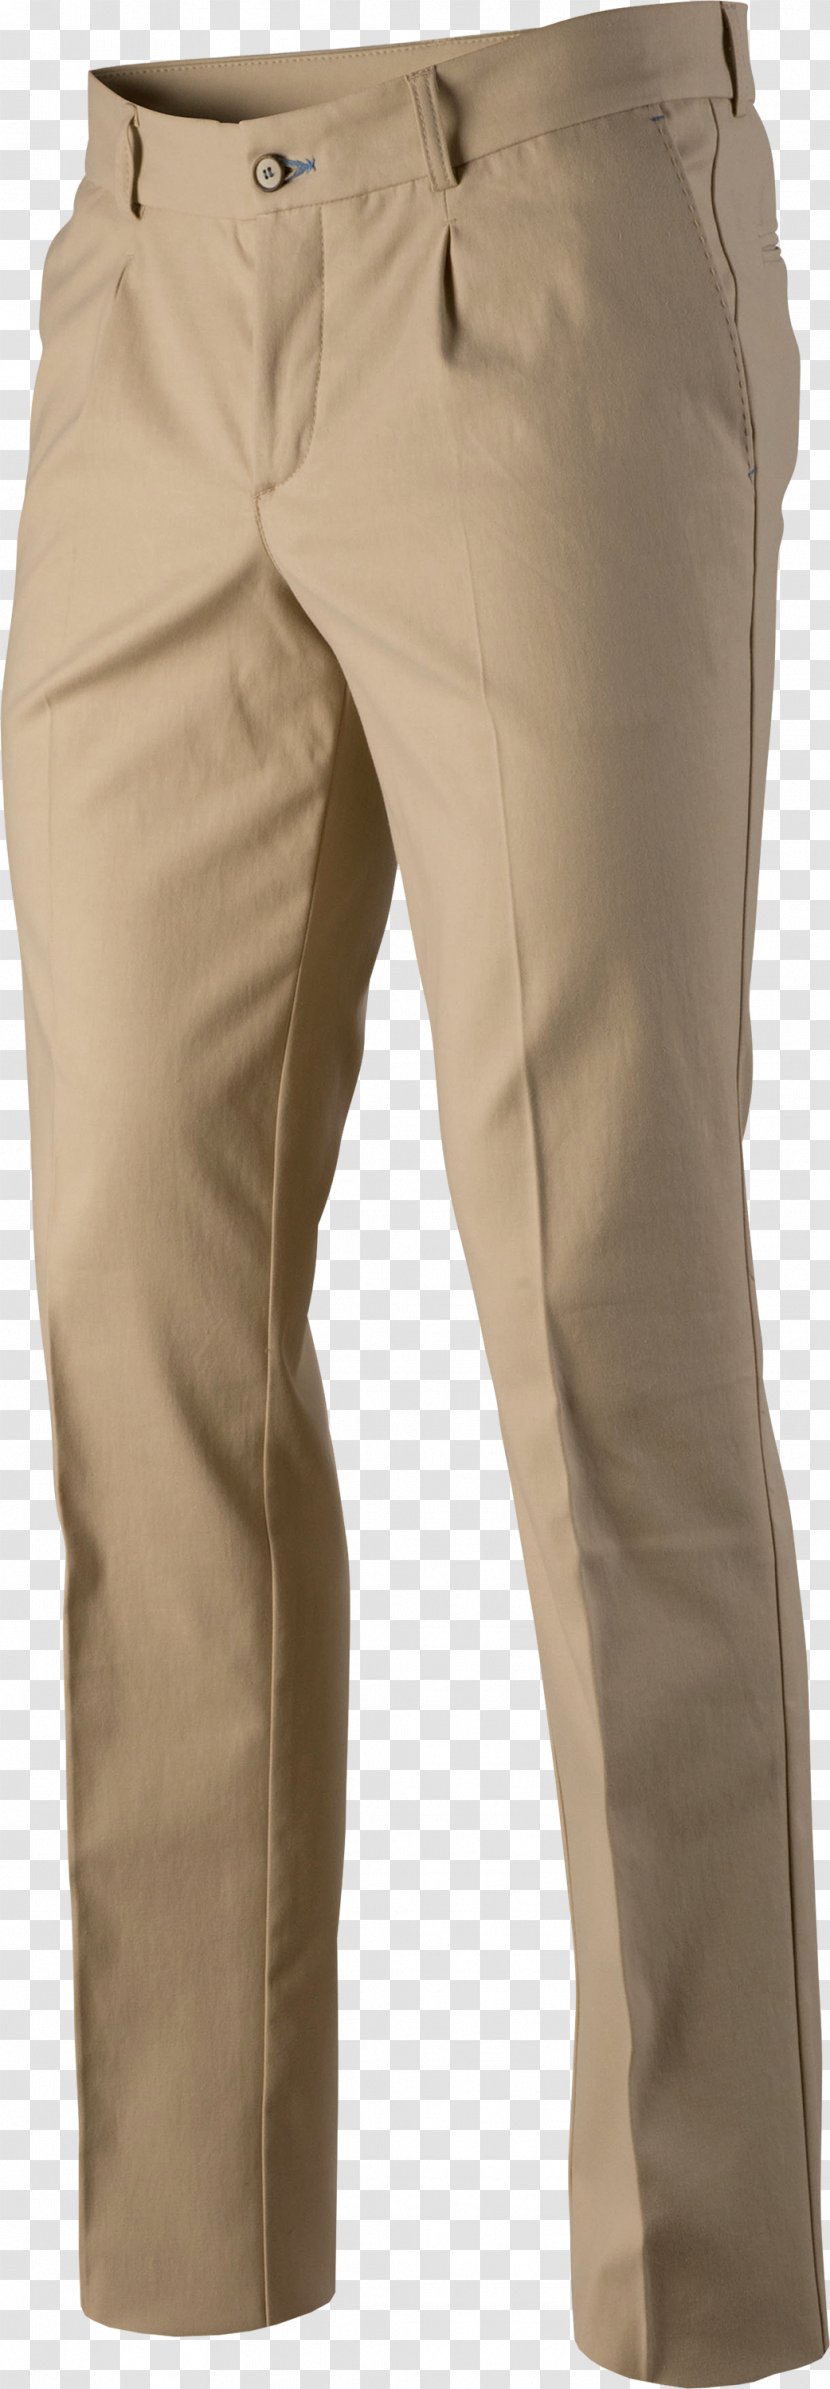 Khaki Waist Pants - Beige - Sand Transparent PNG